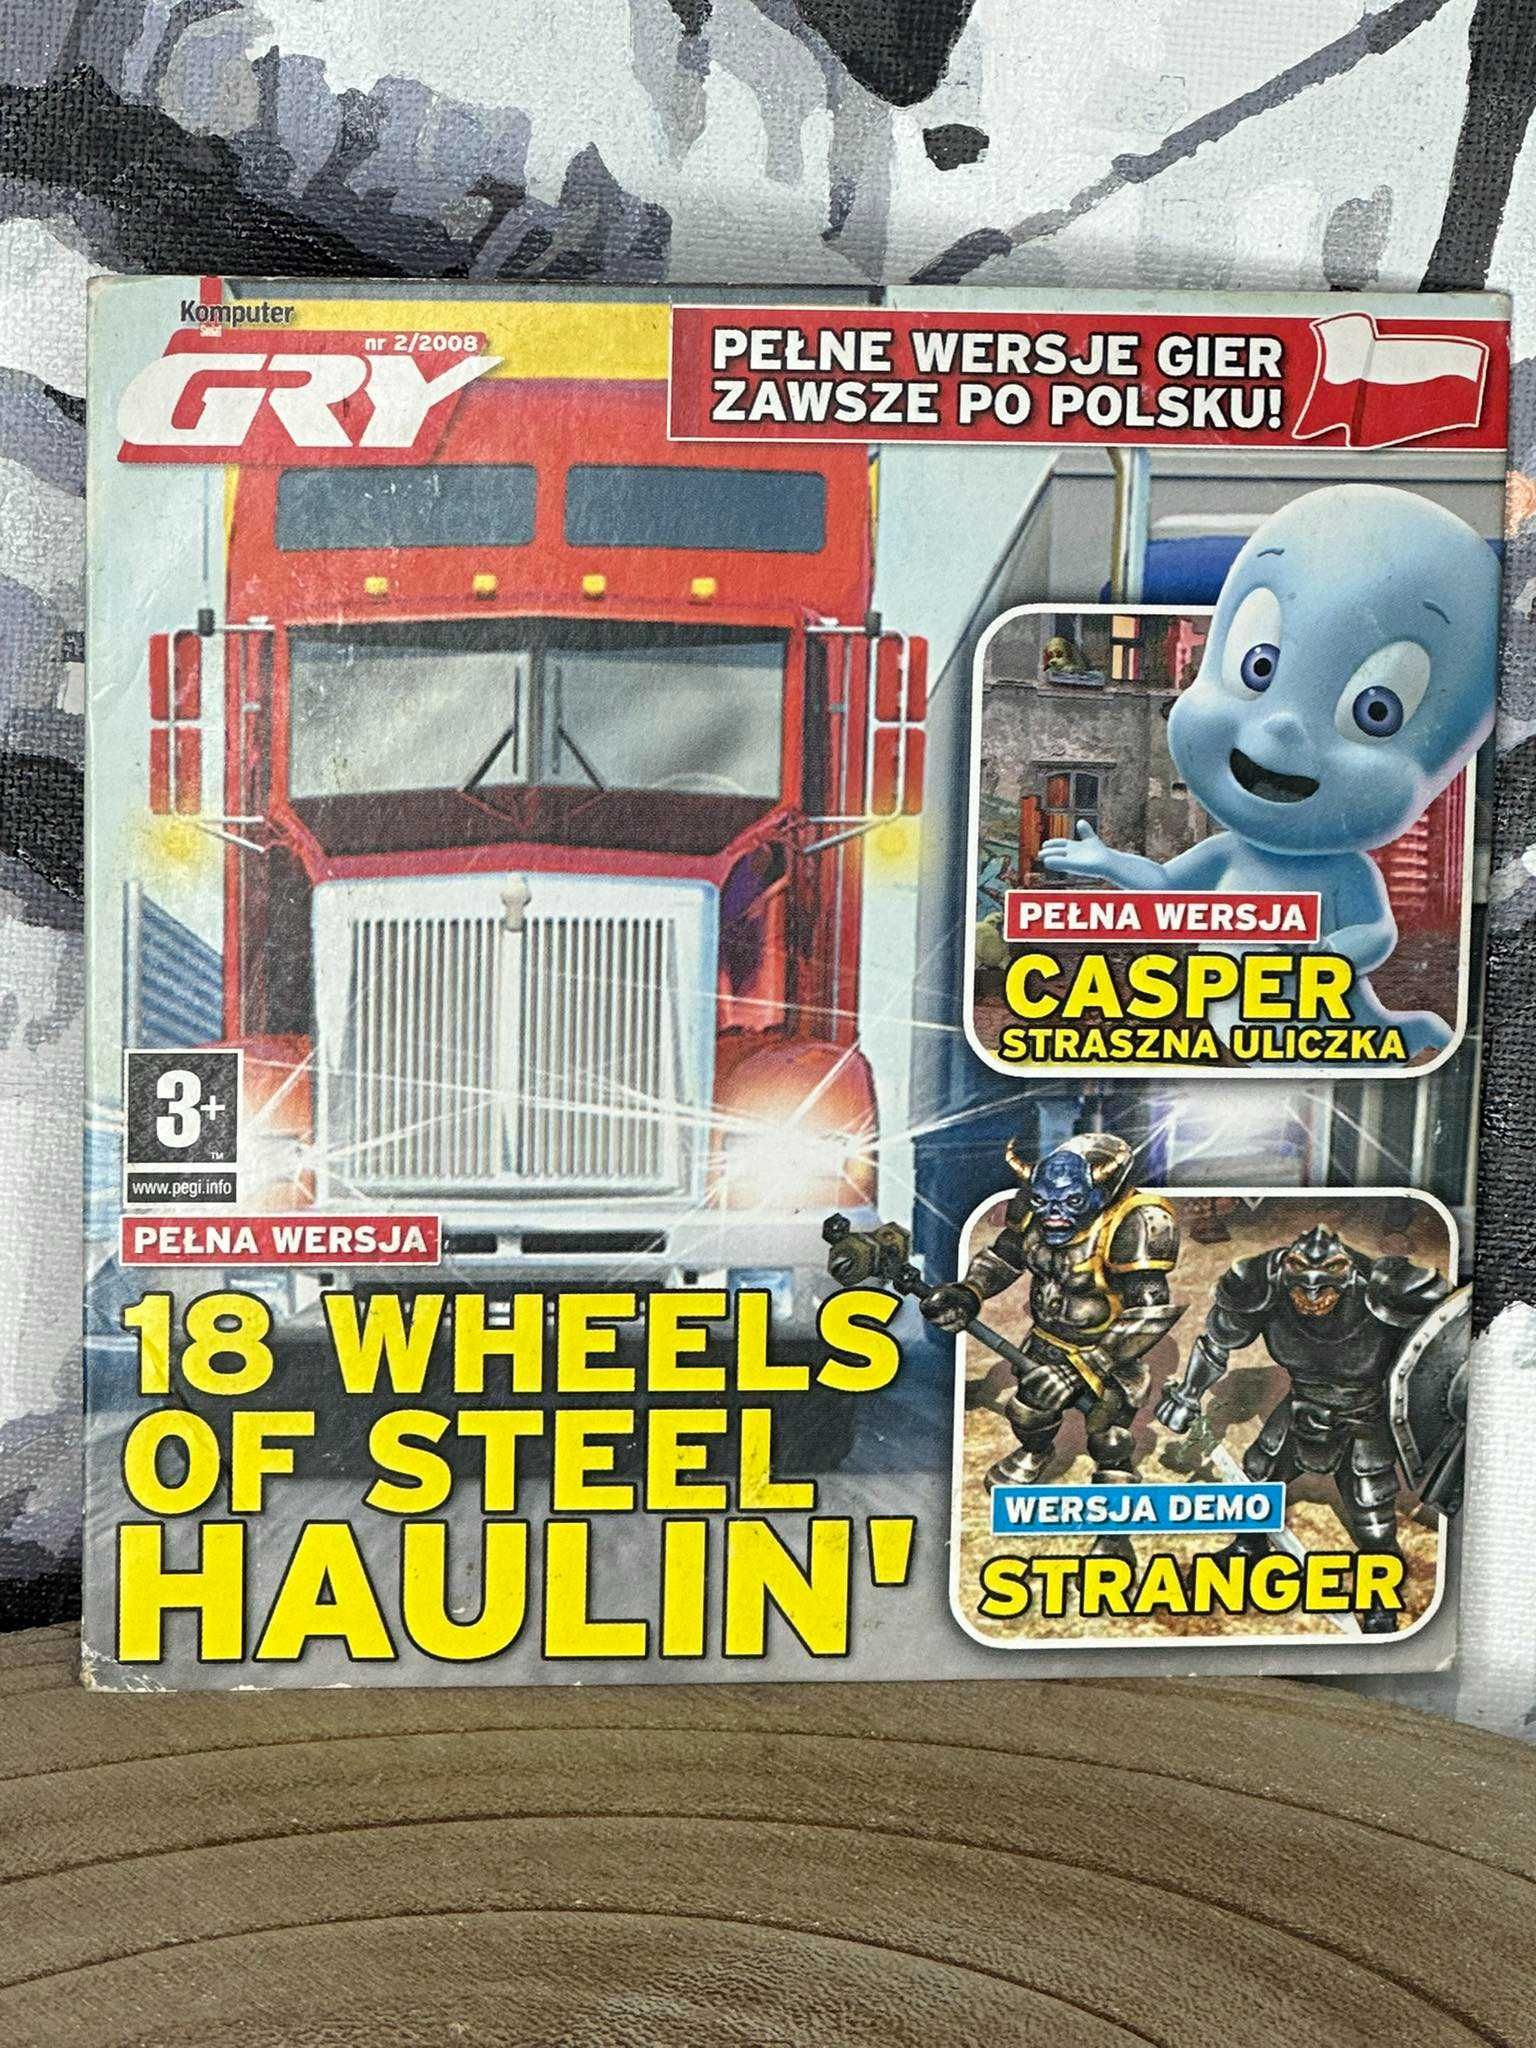 Haulin' 18 Wheels of Steel + Duszek Casper + inne - PC - PL